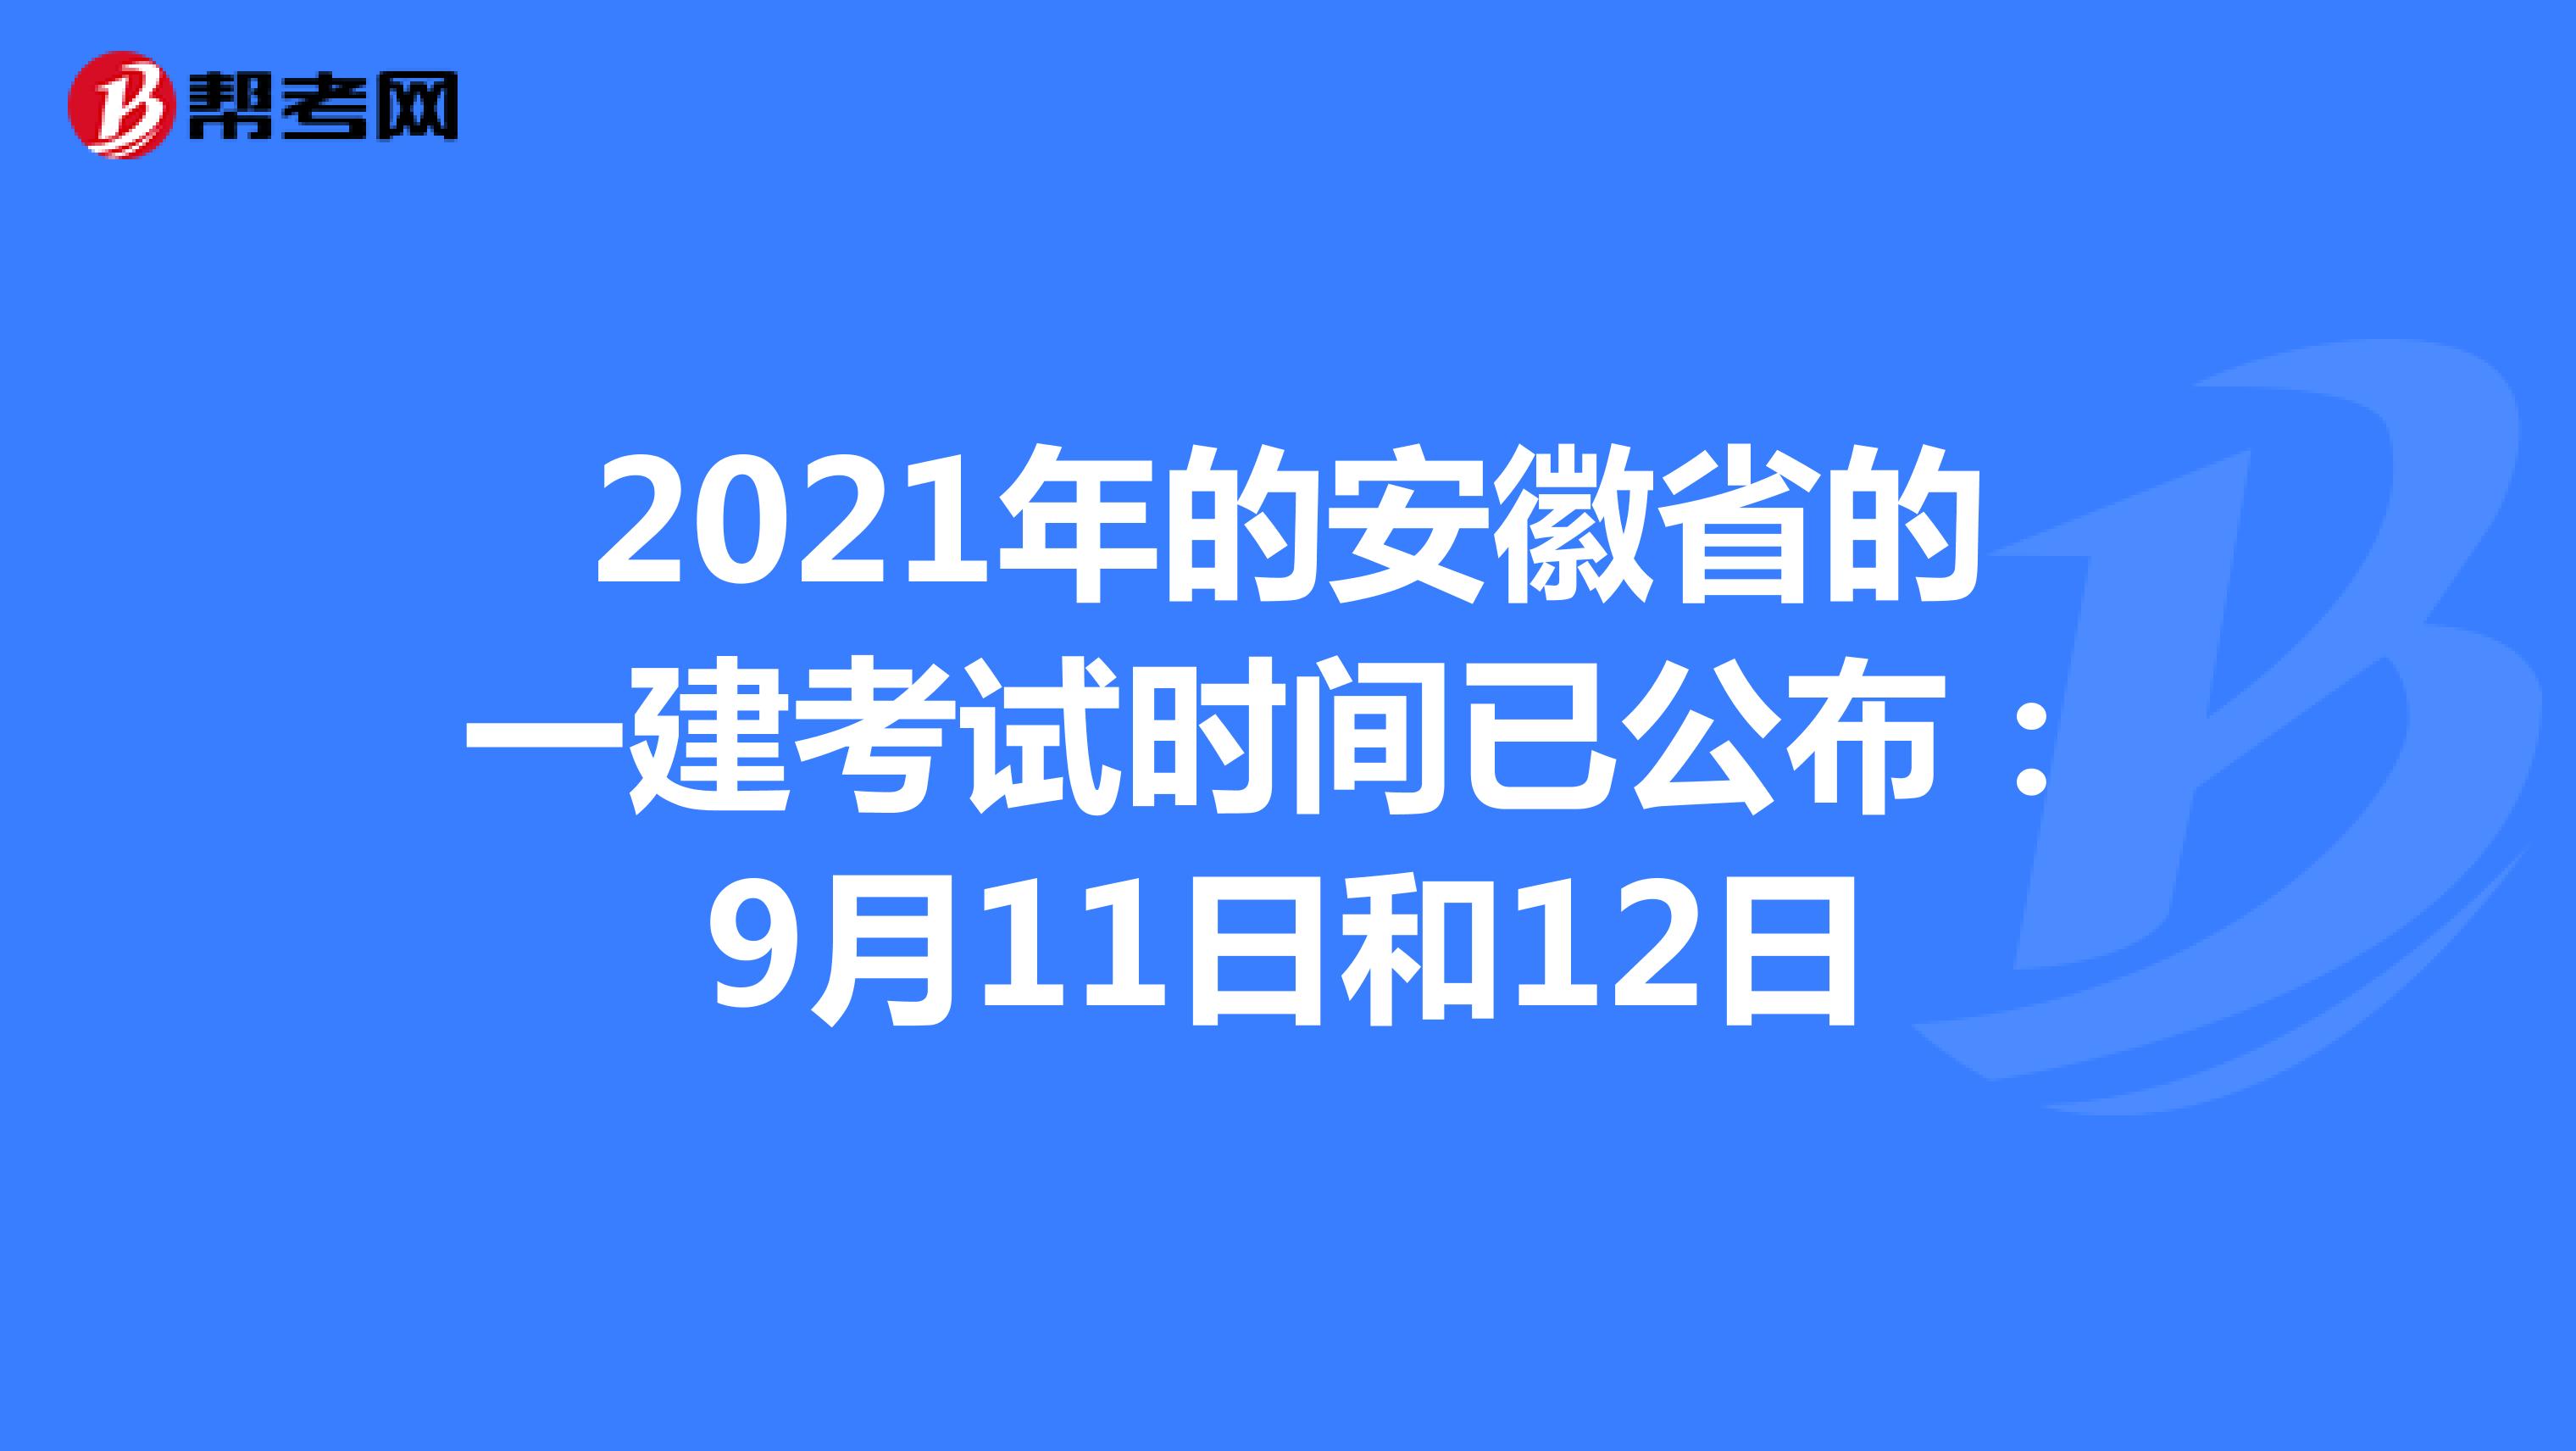 2021年的安徽省的一建考试时间已公布：9月11日和12日